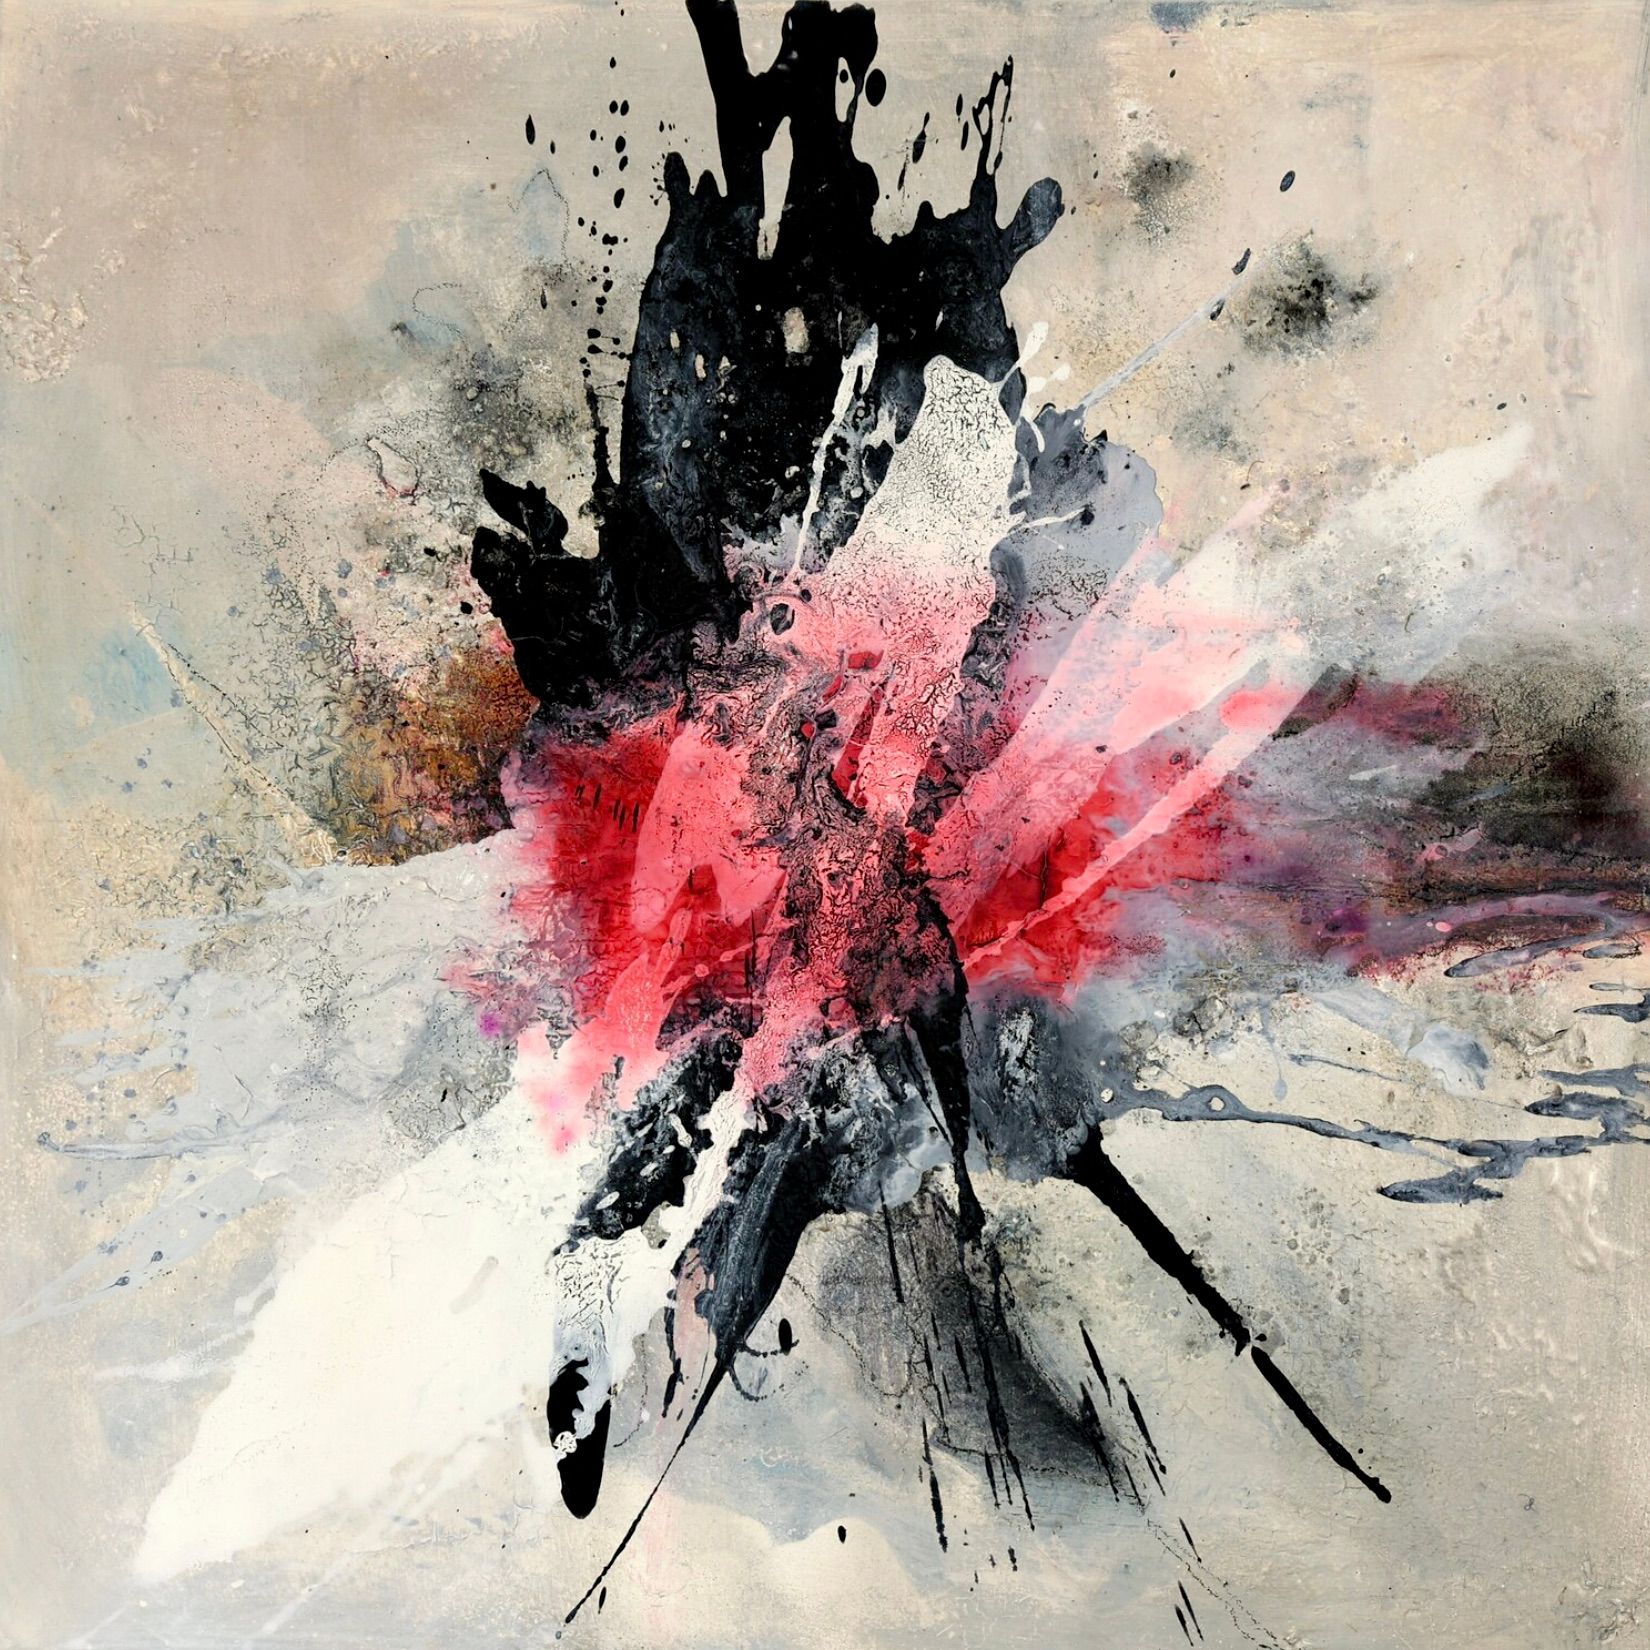 在克里斯塔-哈克的 "爆炸性1 "表现主义、抽象、色彩丰富的画作中，红色、平色、黑色和白色等看似爆炸性的色彩在灰绿色的背景上占主导地位。